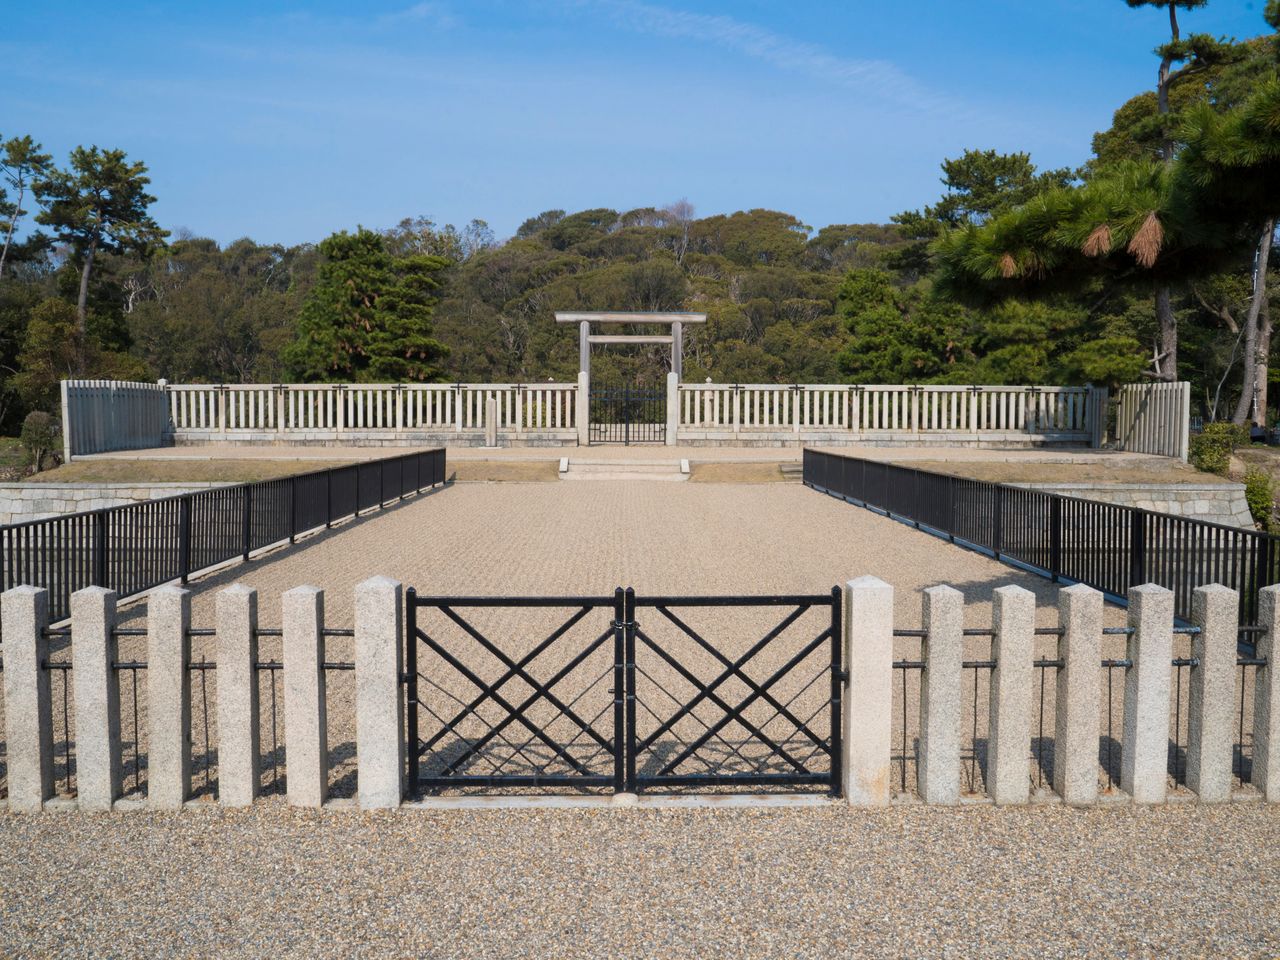 El lugar de adoración del sepulcro del Emperador Nintoku. Solo desde aquí se puede ver la tumba directamente.